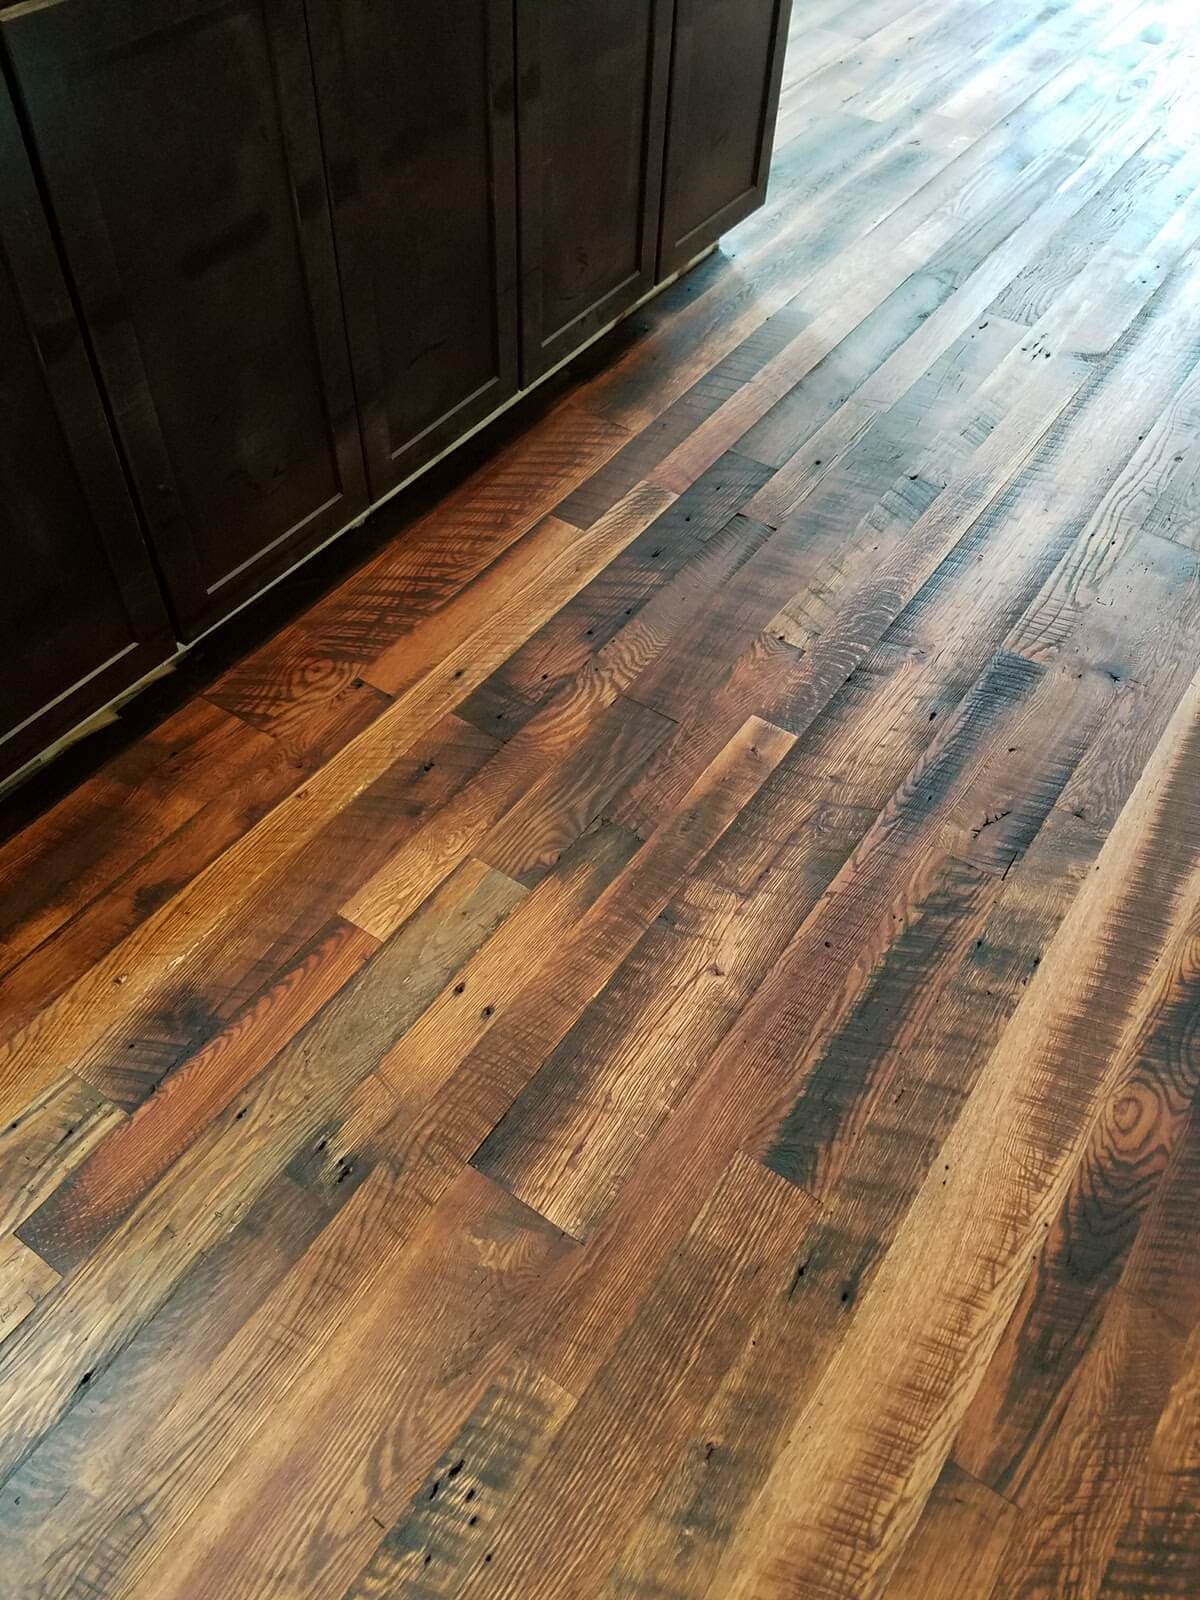 Rustic oak flooring in kitchen floor.